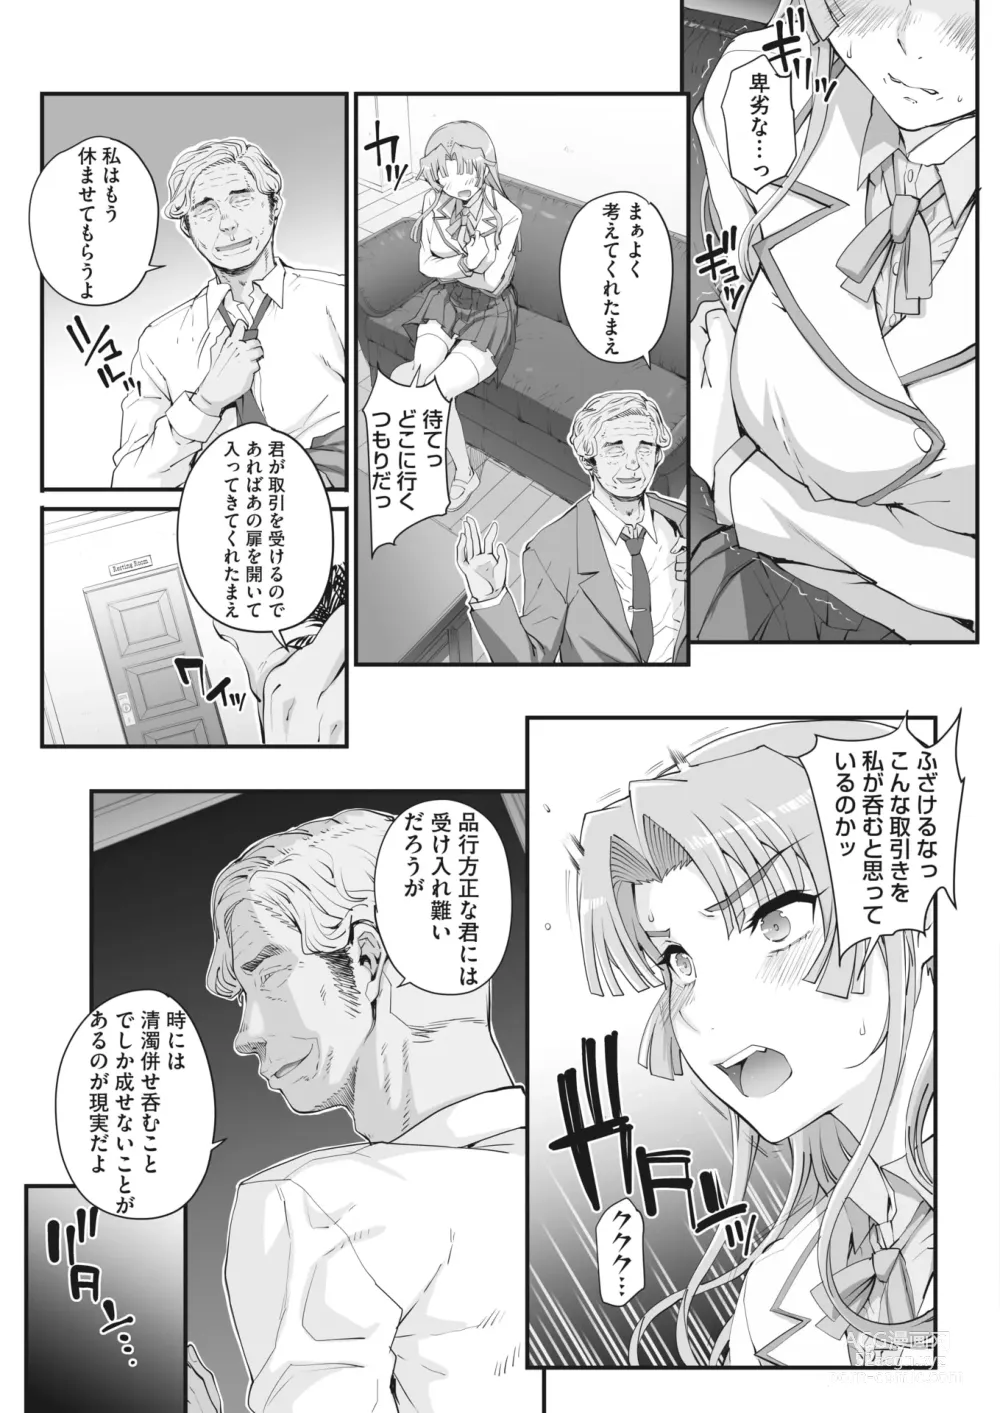 Page 7 of manga 性濁併セ呑ム Ch.1.4